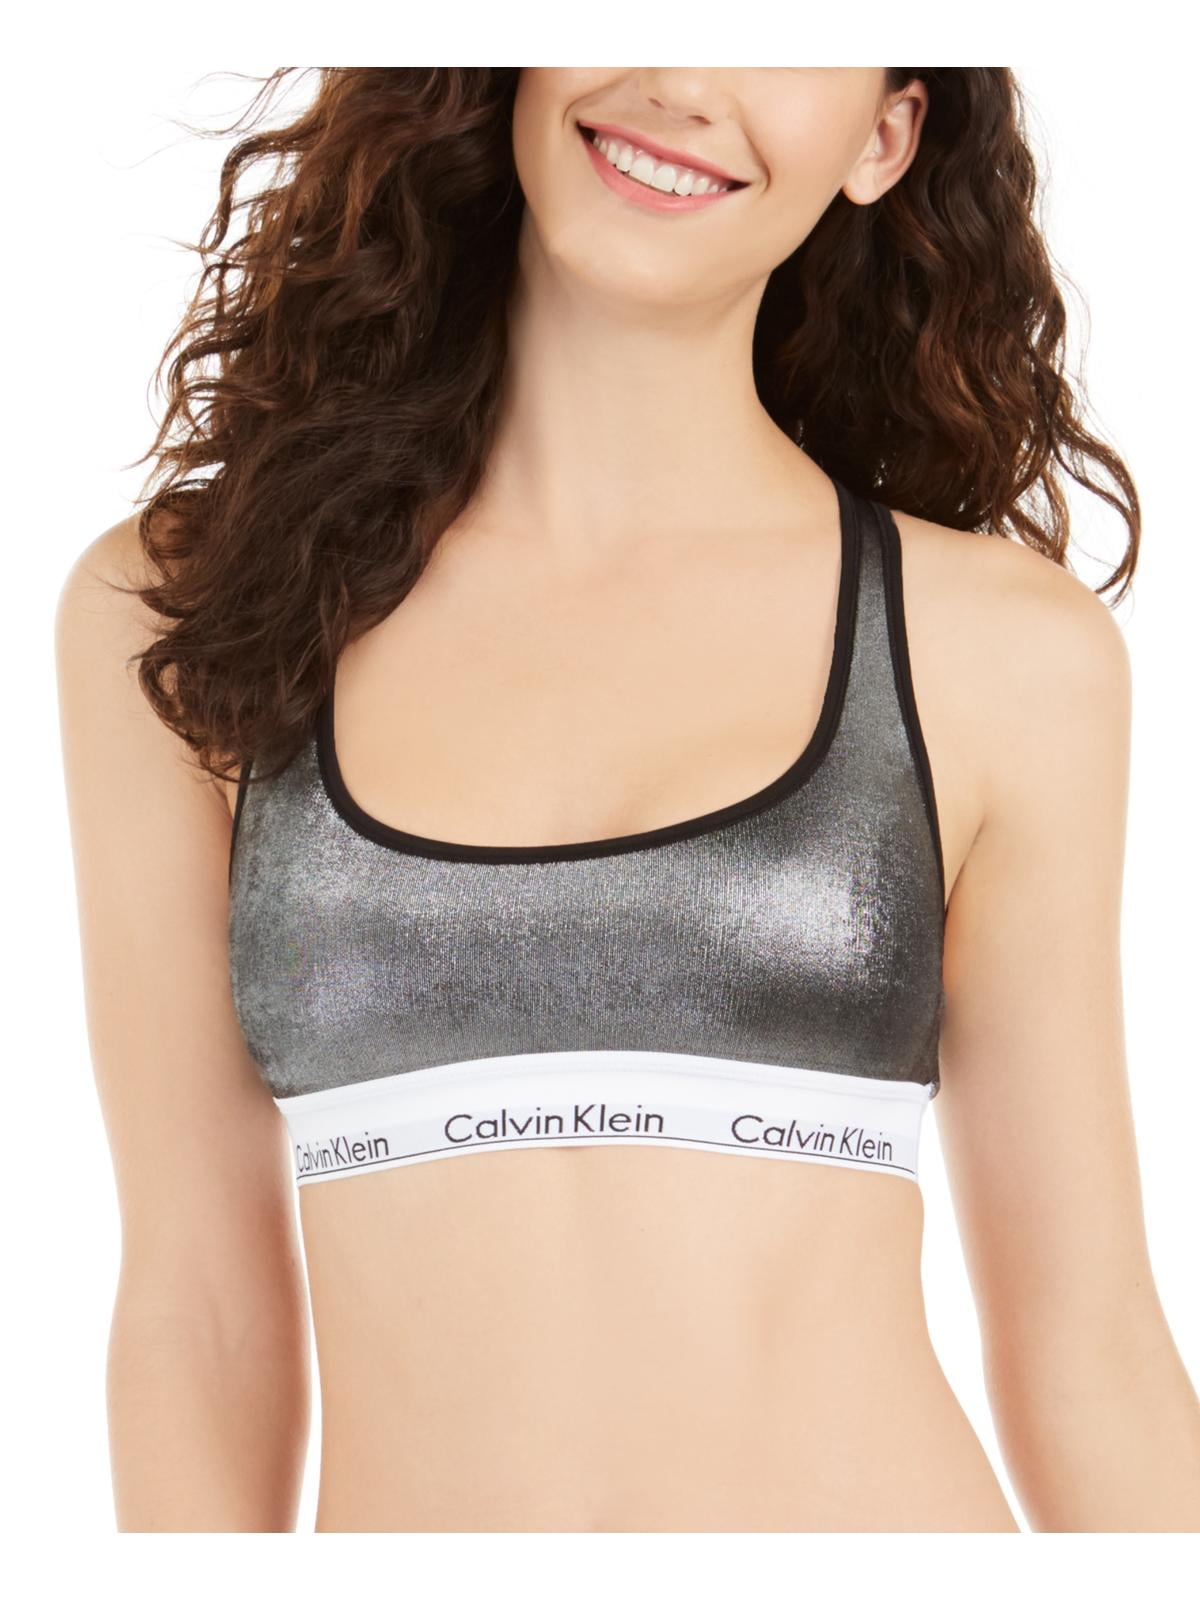  Calvin Klein Womens CK One Cotton Unlined Bralette